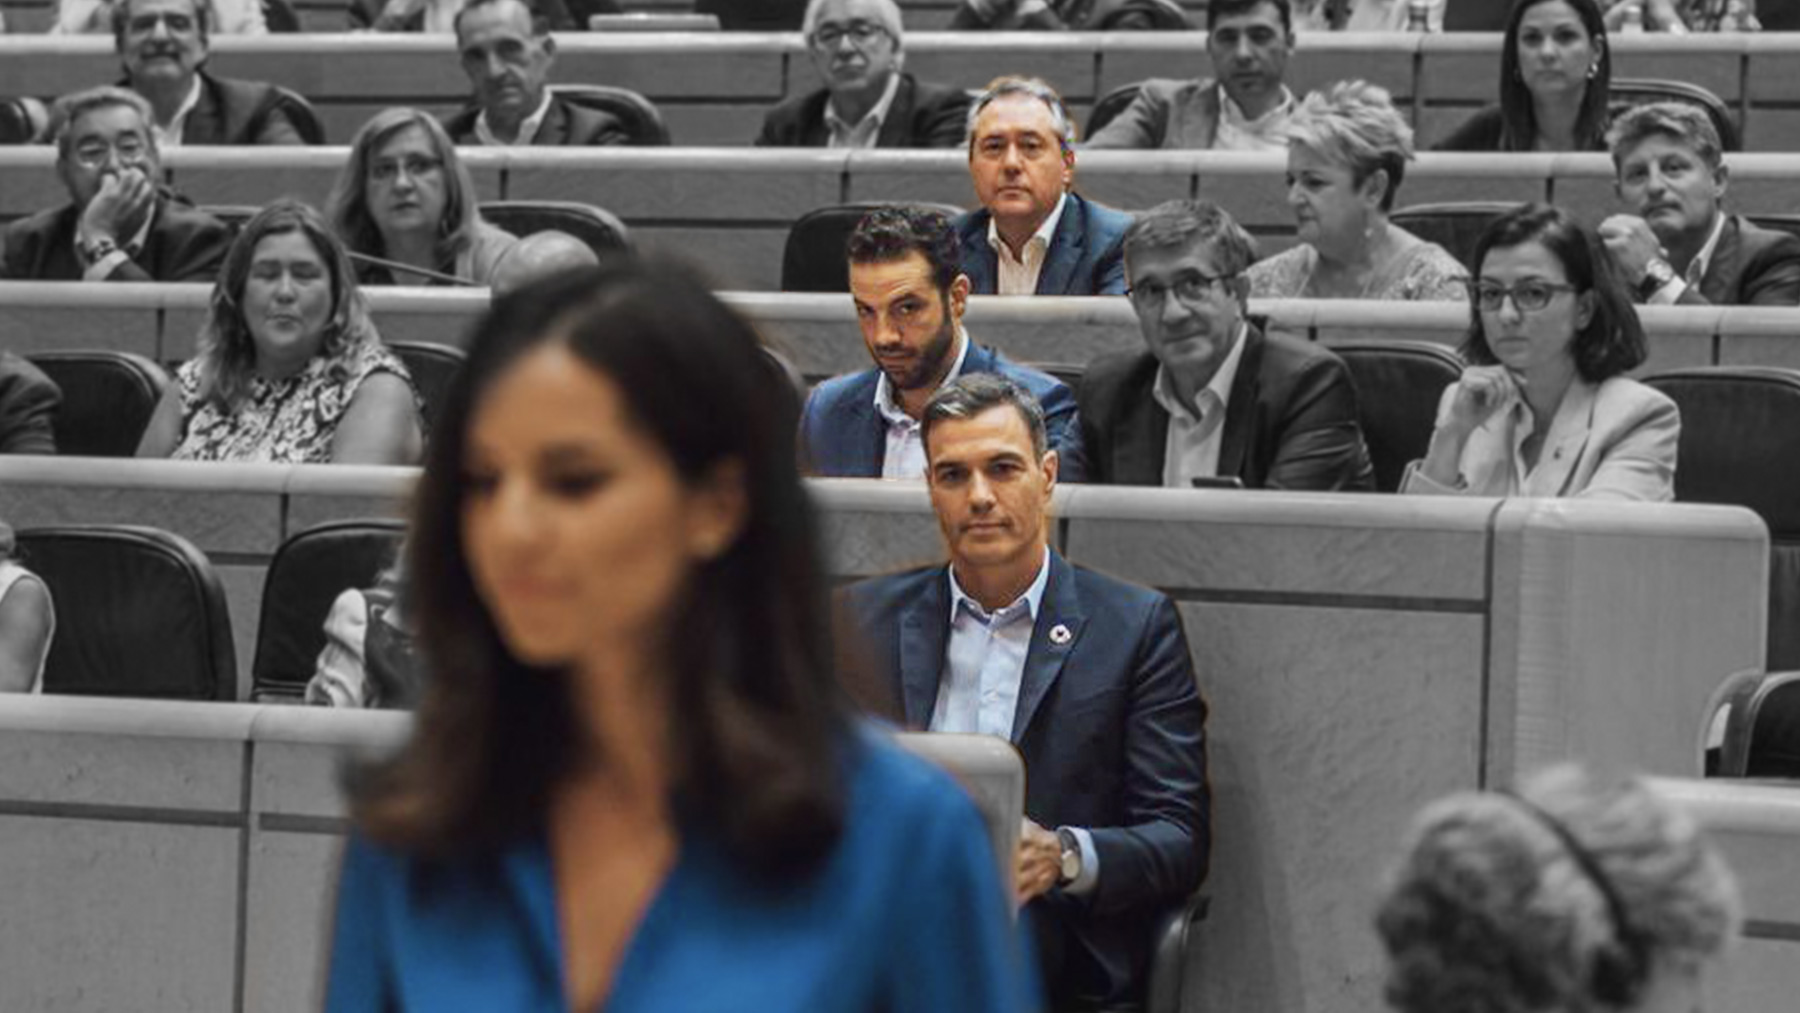 Las miradas libidinosas desde la bancada del PSOE a Pepa Millán.